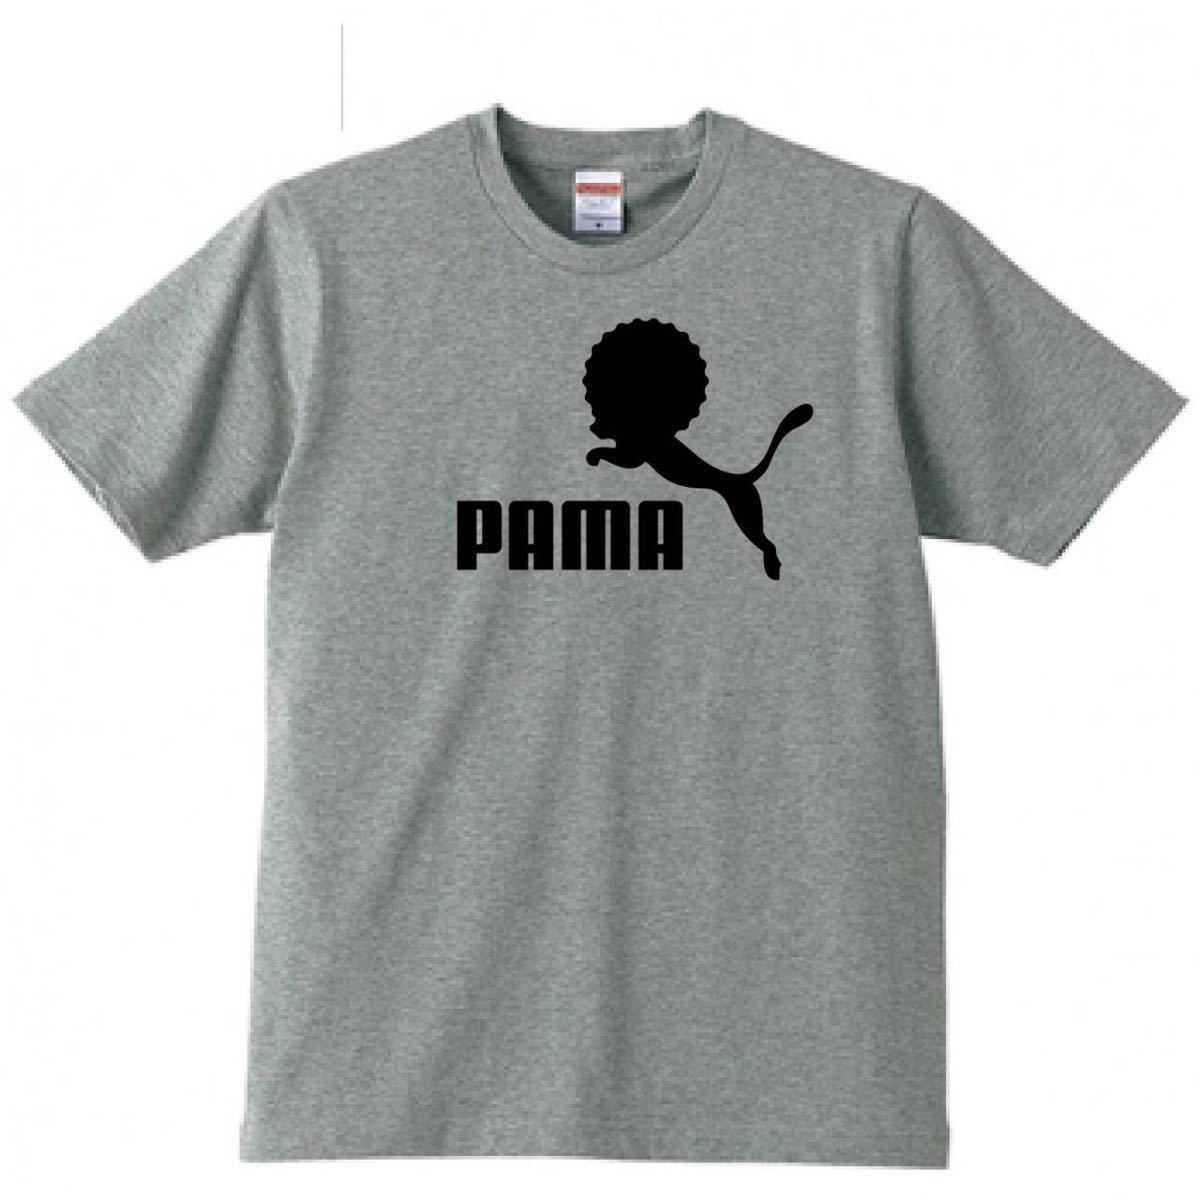 【送料無料】【新品】PAMA パーマ Tシャツ パロディ おもしろ プレゼント メンズ グレー Lサイズ_画像1